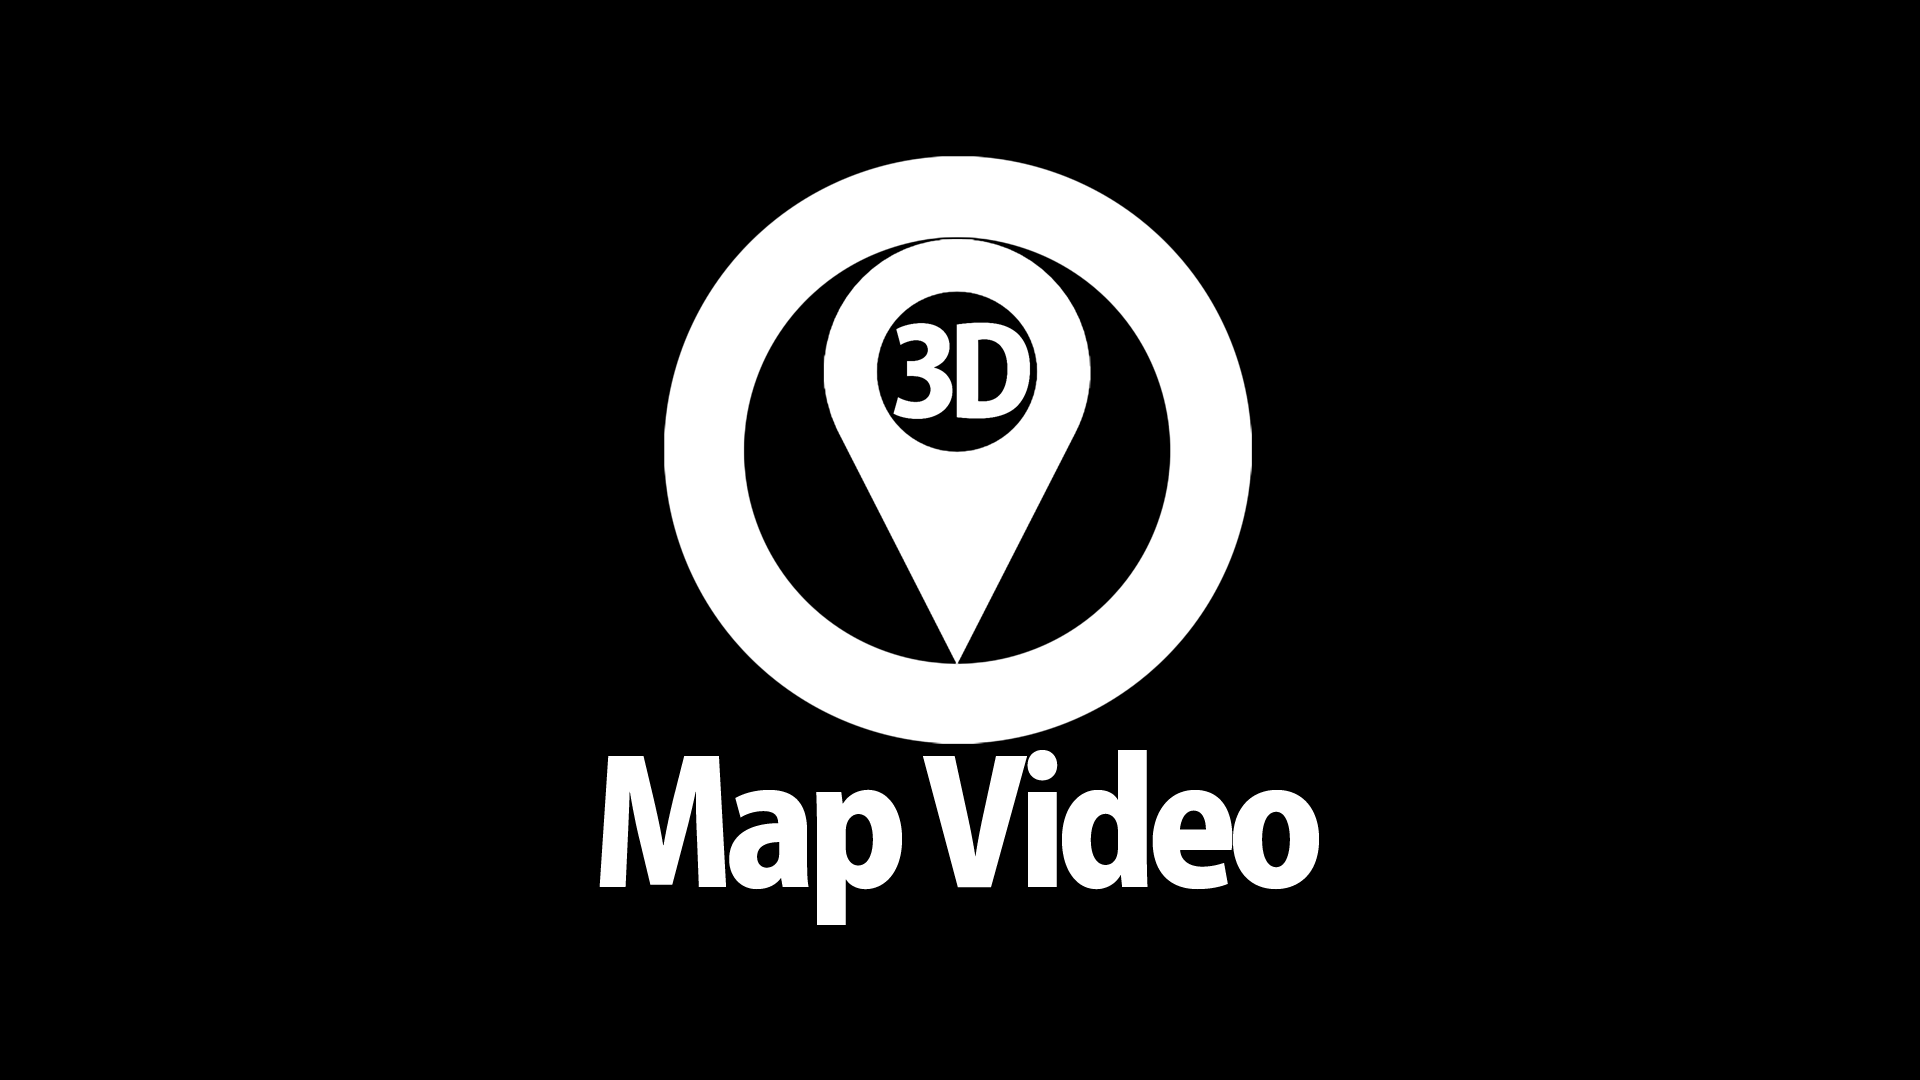 3D Map Videos